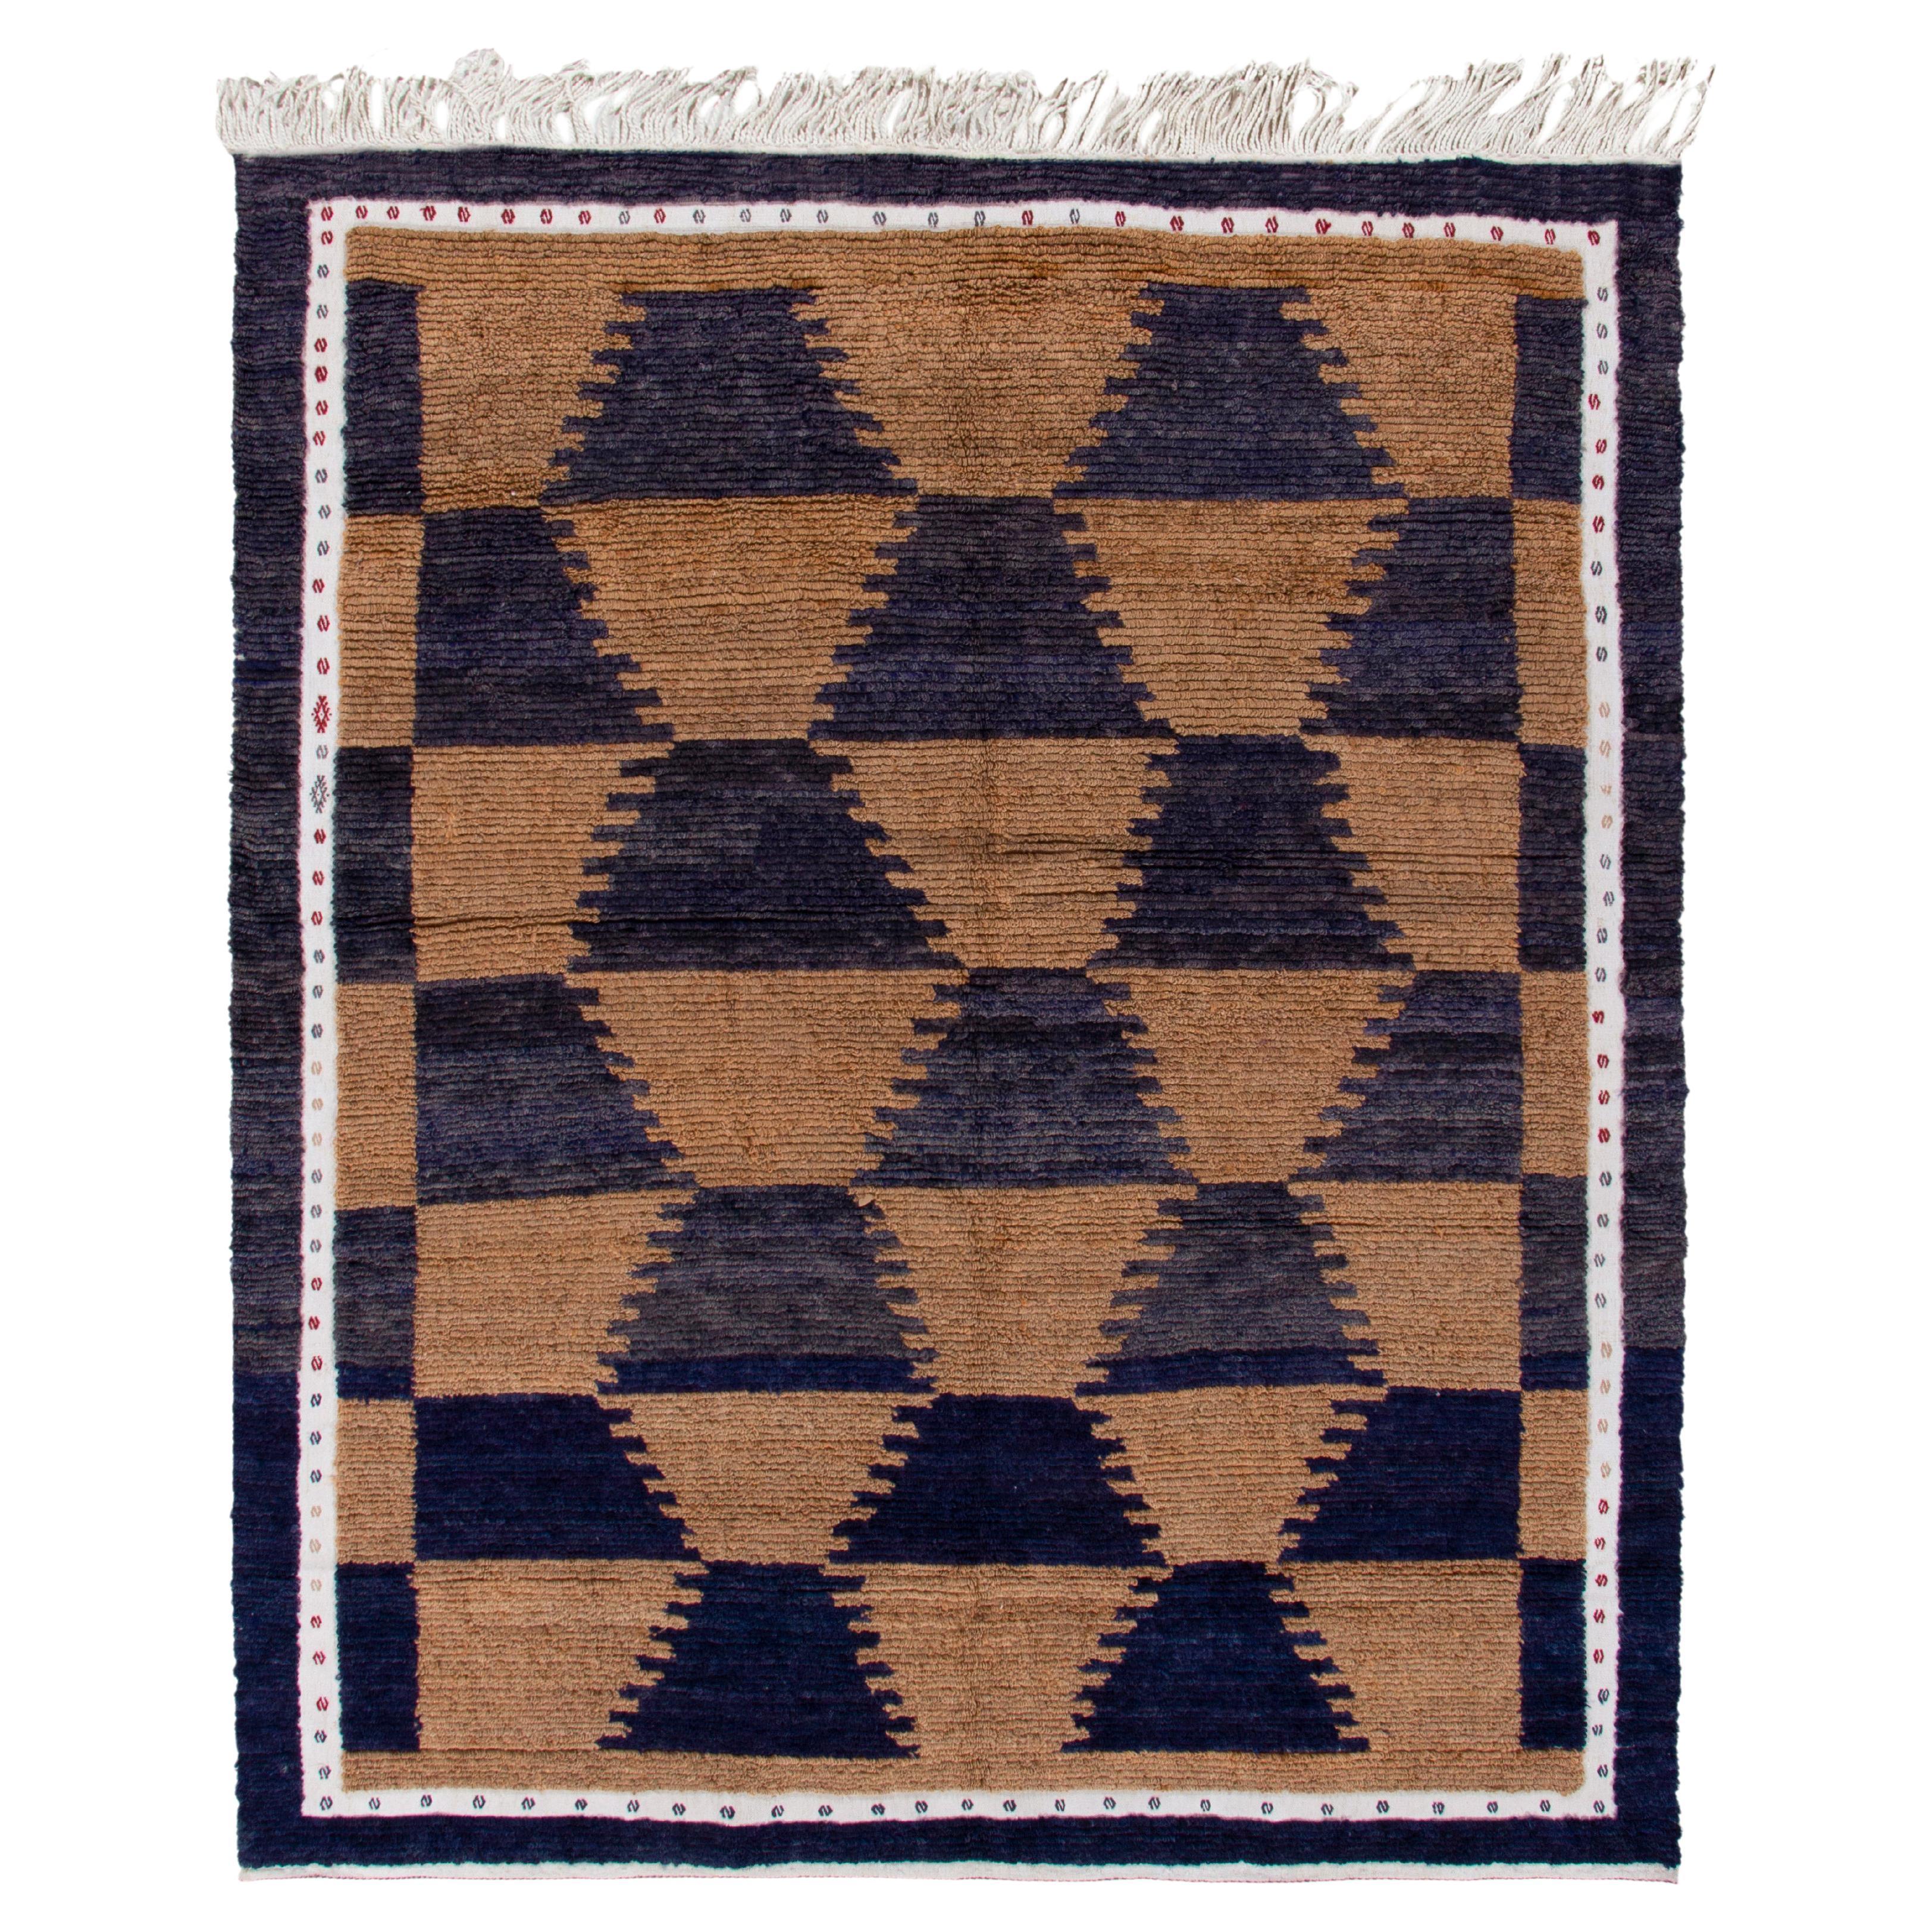 Vintage Tulu Vintage Teppich in Braun, Mitternachtsblau & Weiß mit geometrischem Muster von Teppich & Kelim